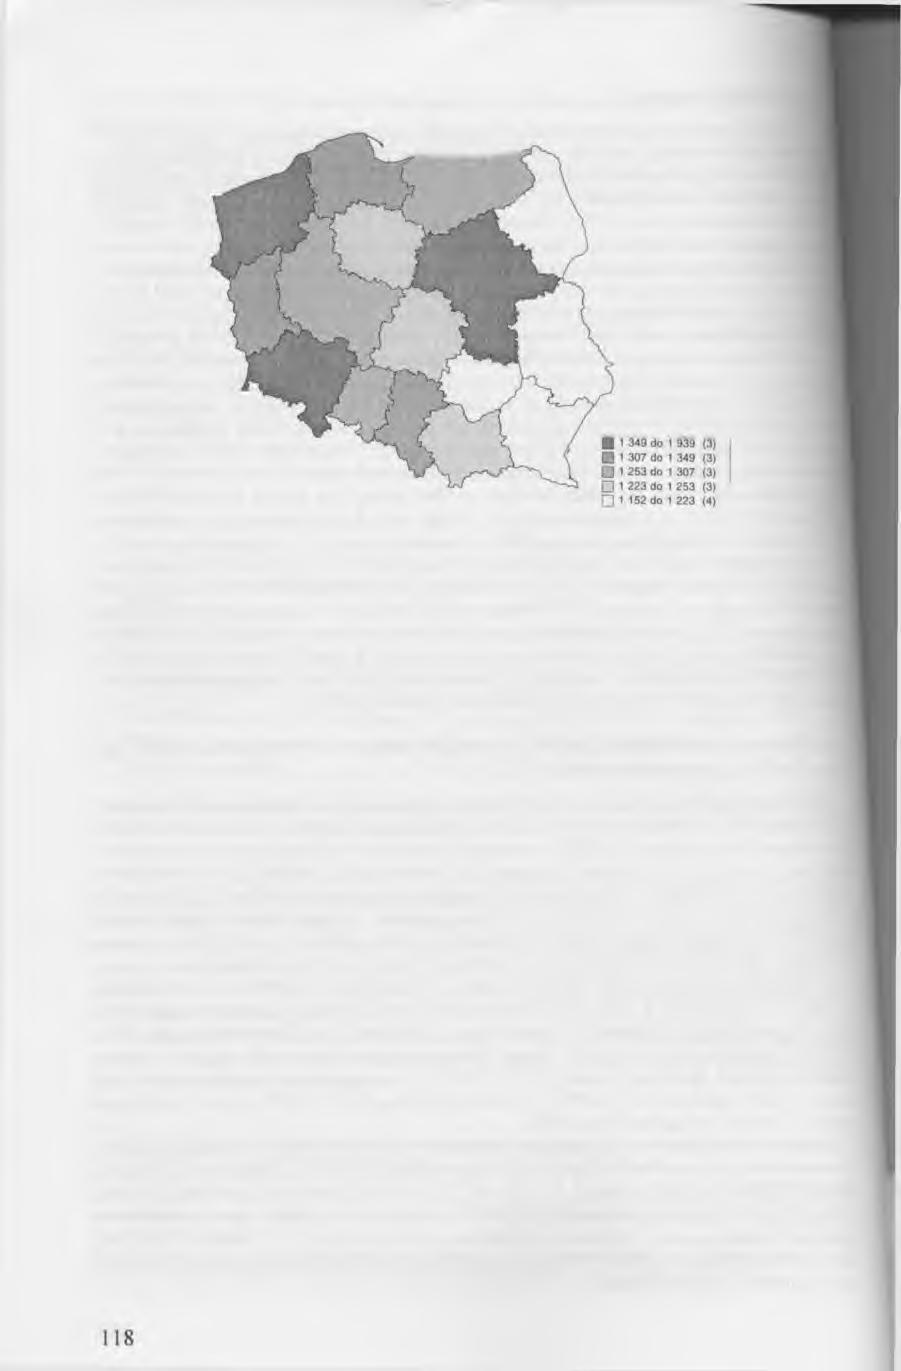 Rys. 2. Saldo migracji ogółem (liczba osób na 1000 ludności) w Polsce według województw w 1995 r. Źródło: Opracowanie własne na podstawie danych przeliczonych i udostępnionych przez GUS.